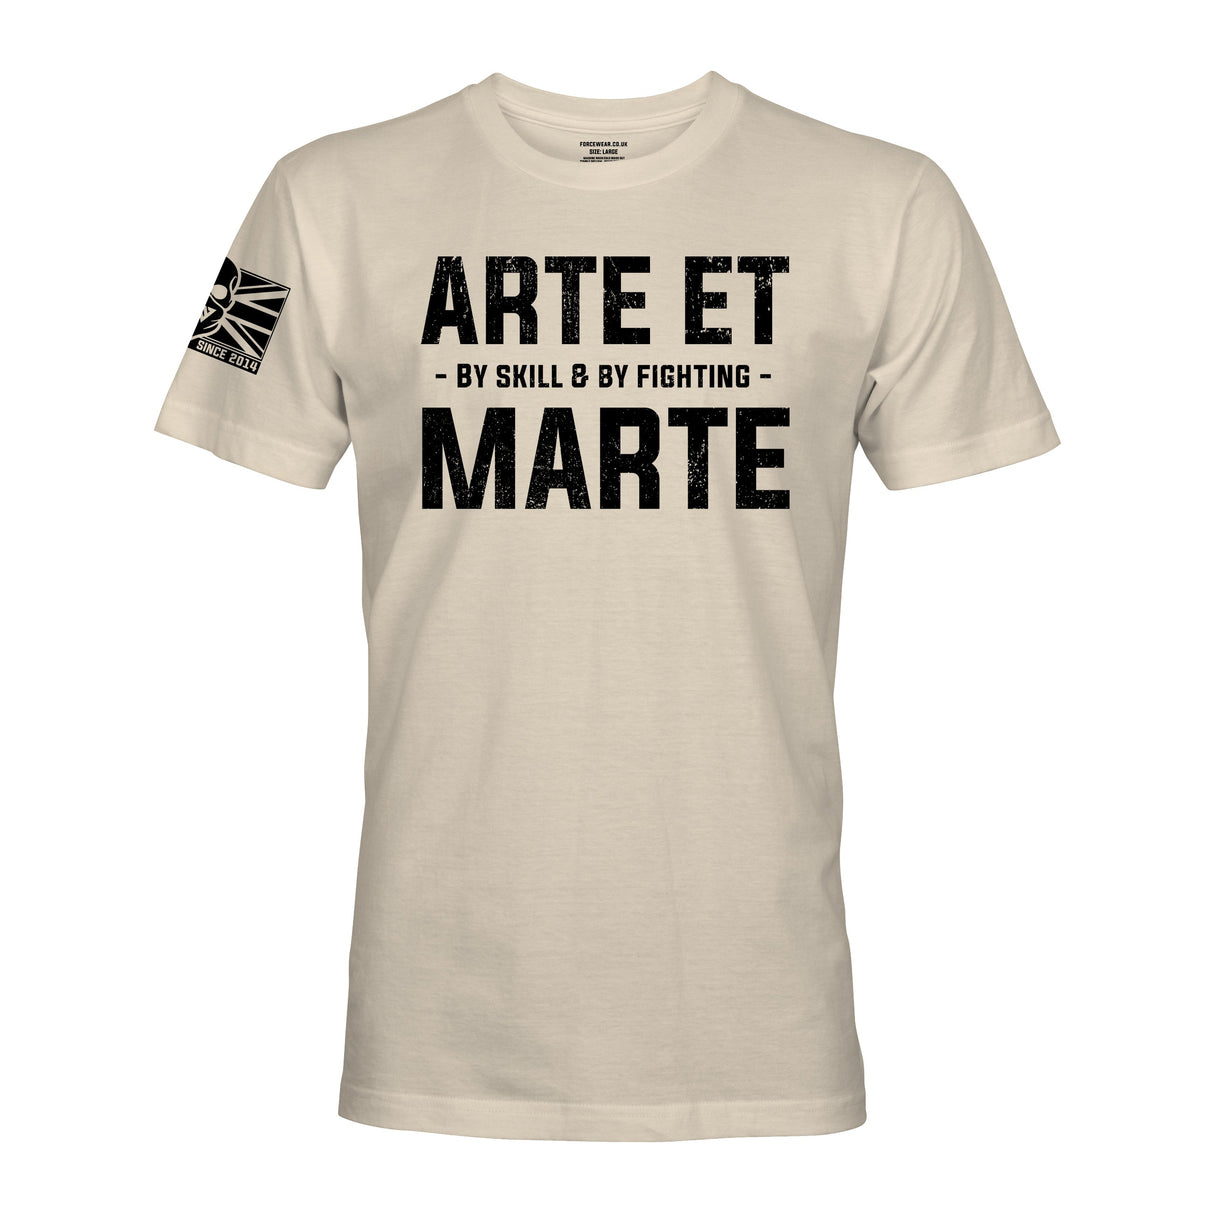 ARTE ET MARTE (REME) - Force Wear HQ - T-SHIRTS